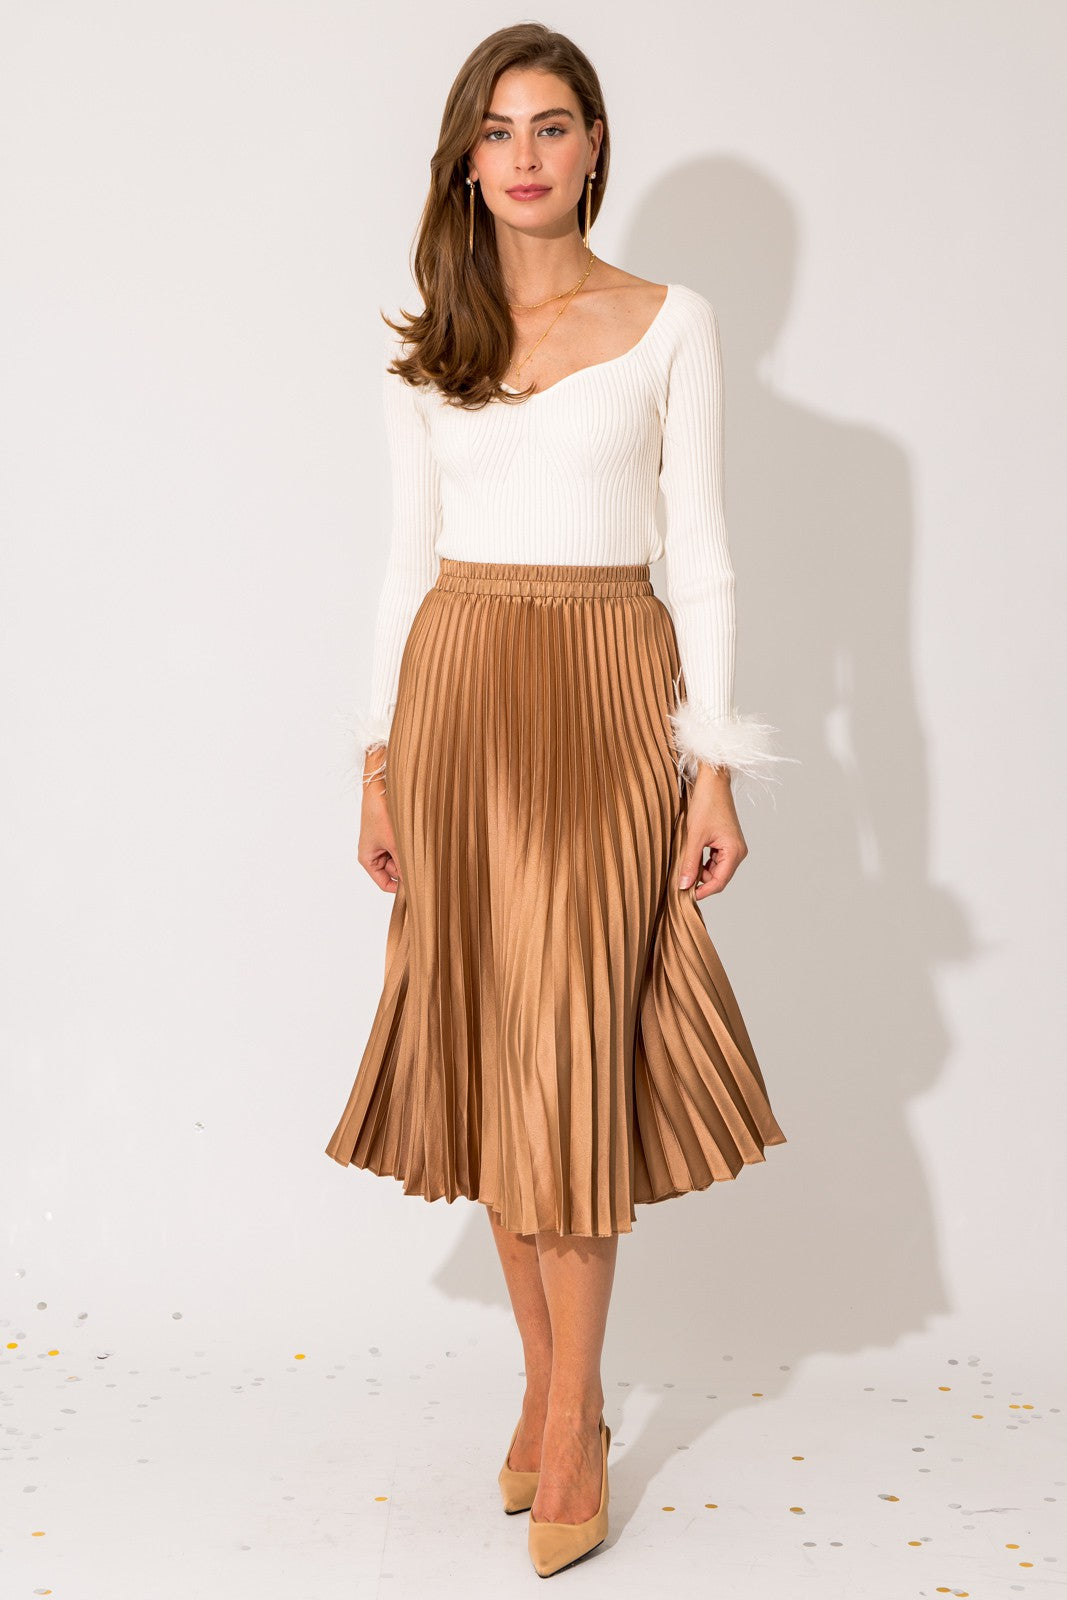 Sunburst Gold Satin Skirt